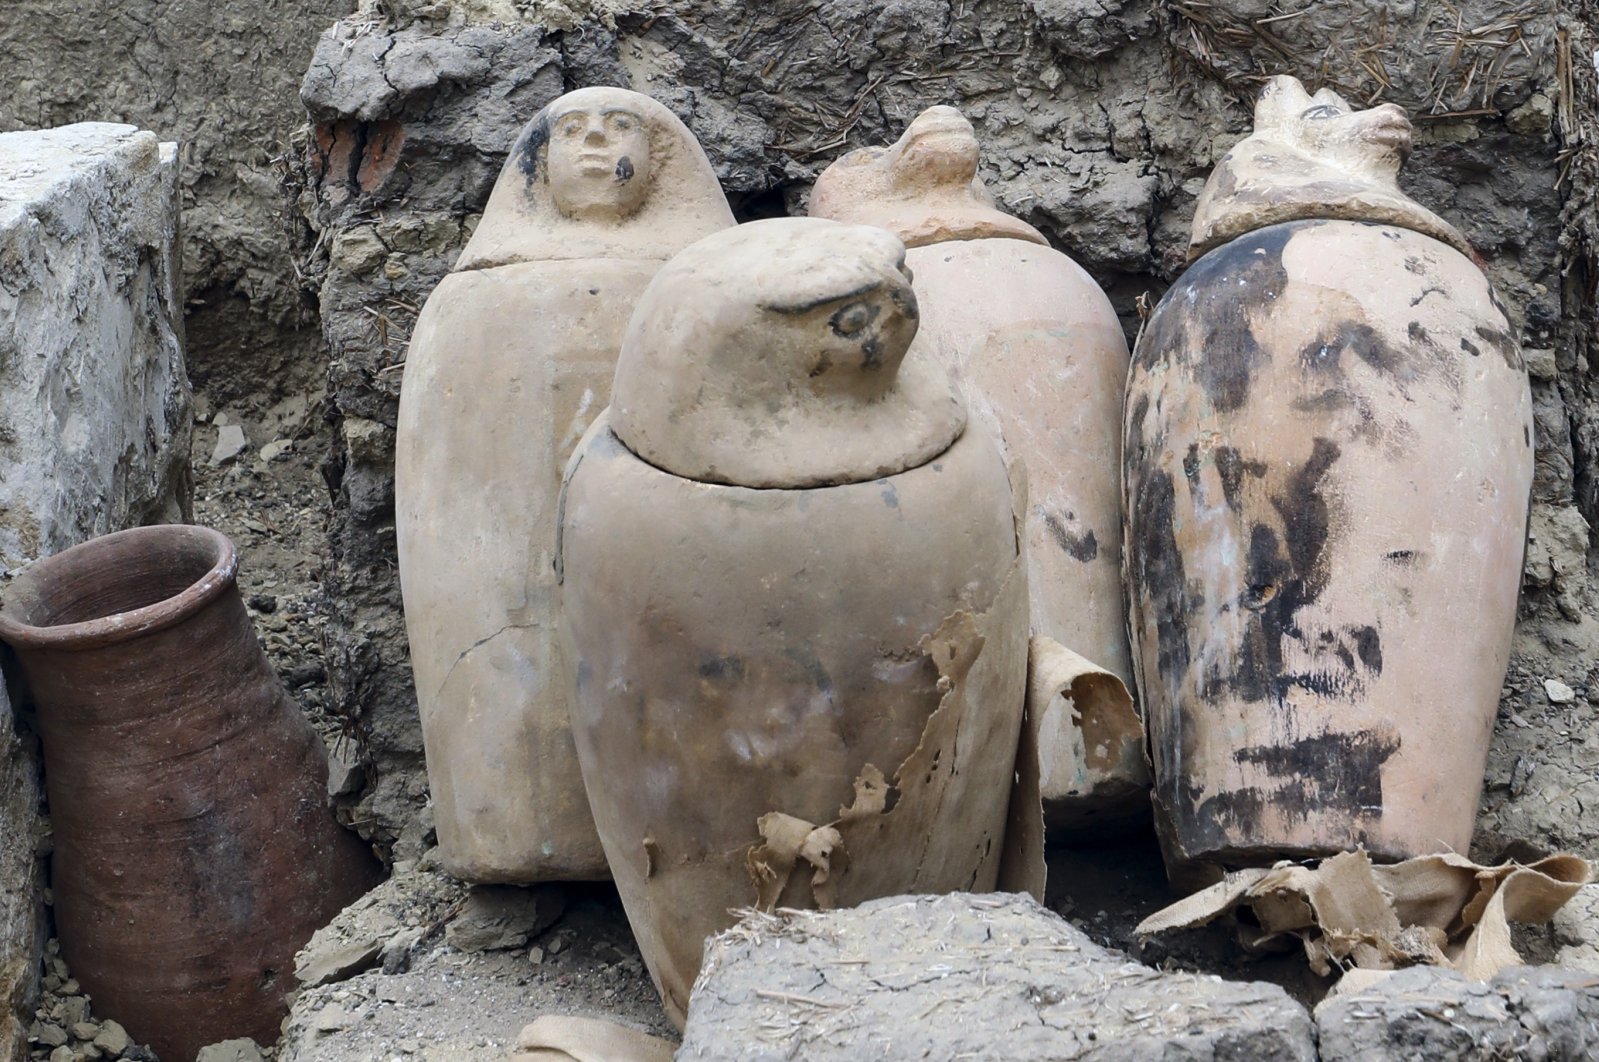 Bengkel mumifikasi kuno, makam yang digali di Mesir